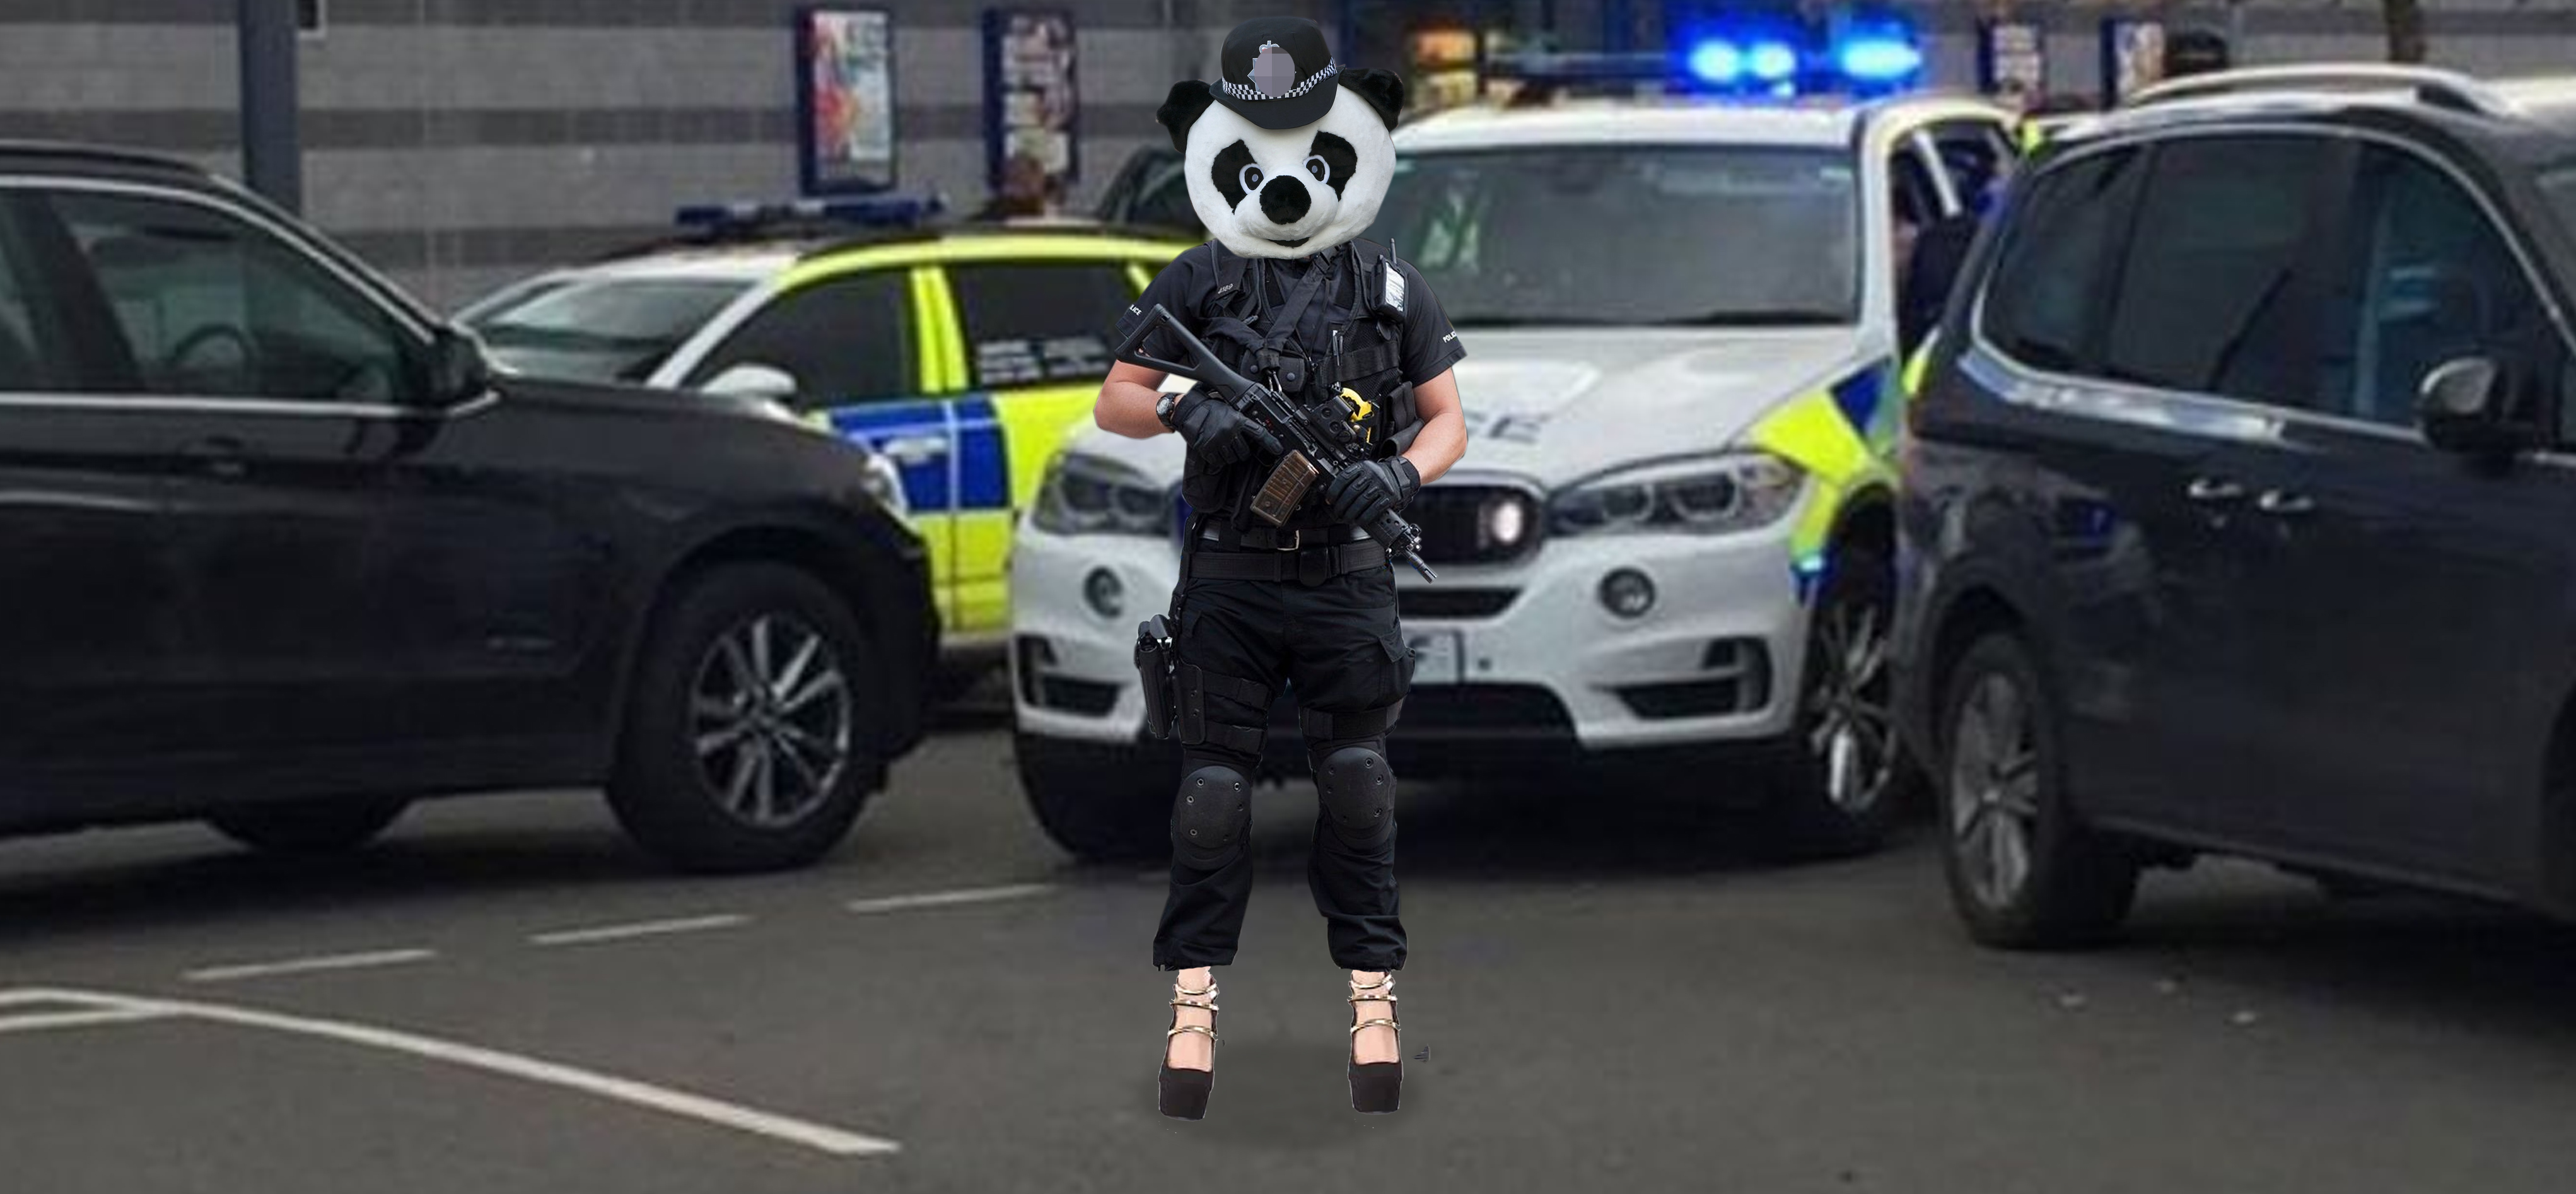 Armed Police Panda Wearing High Heels